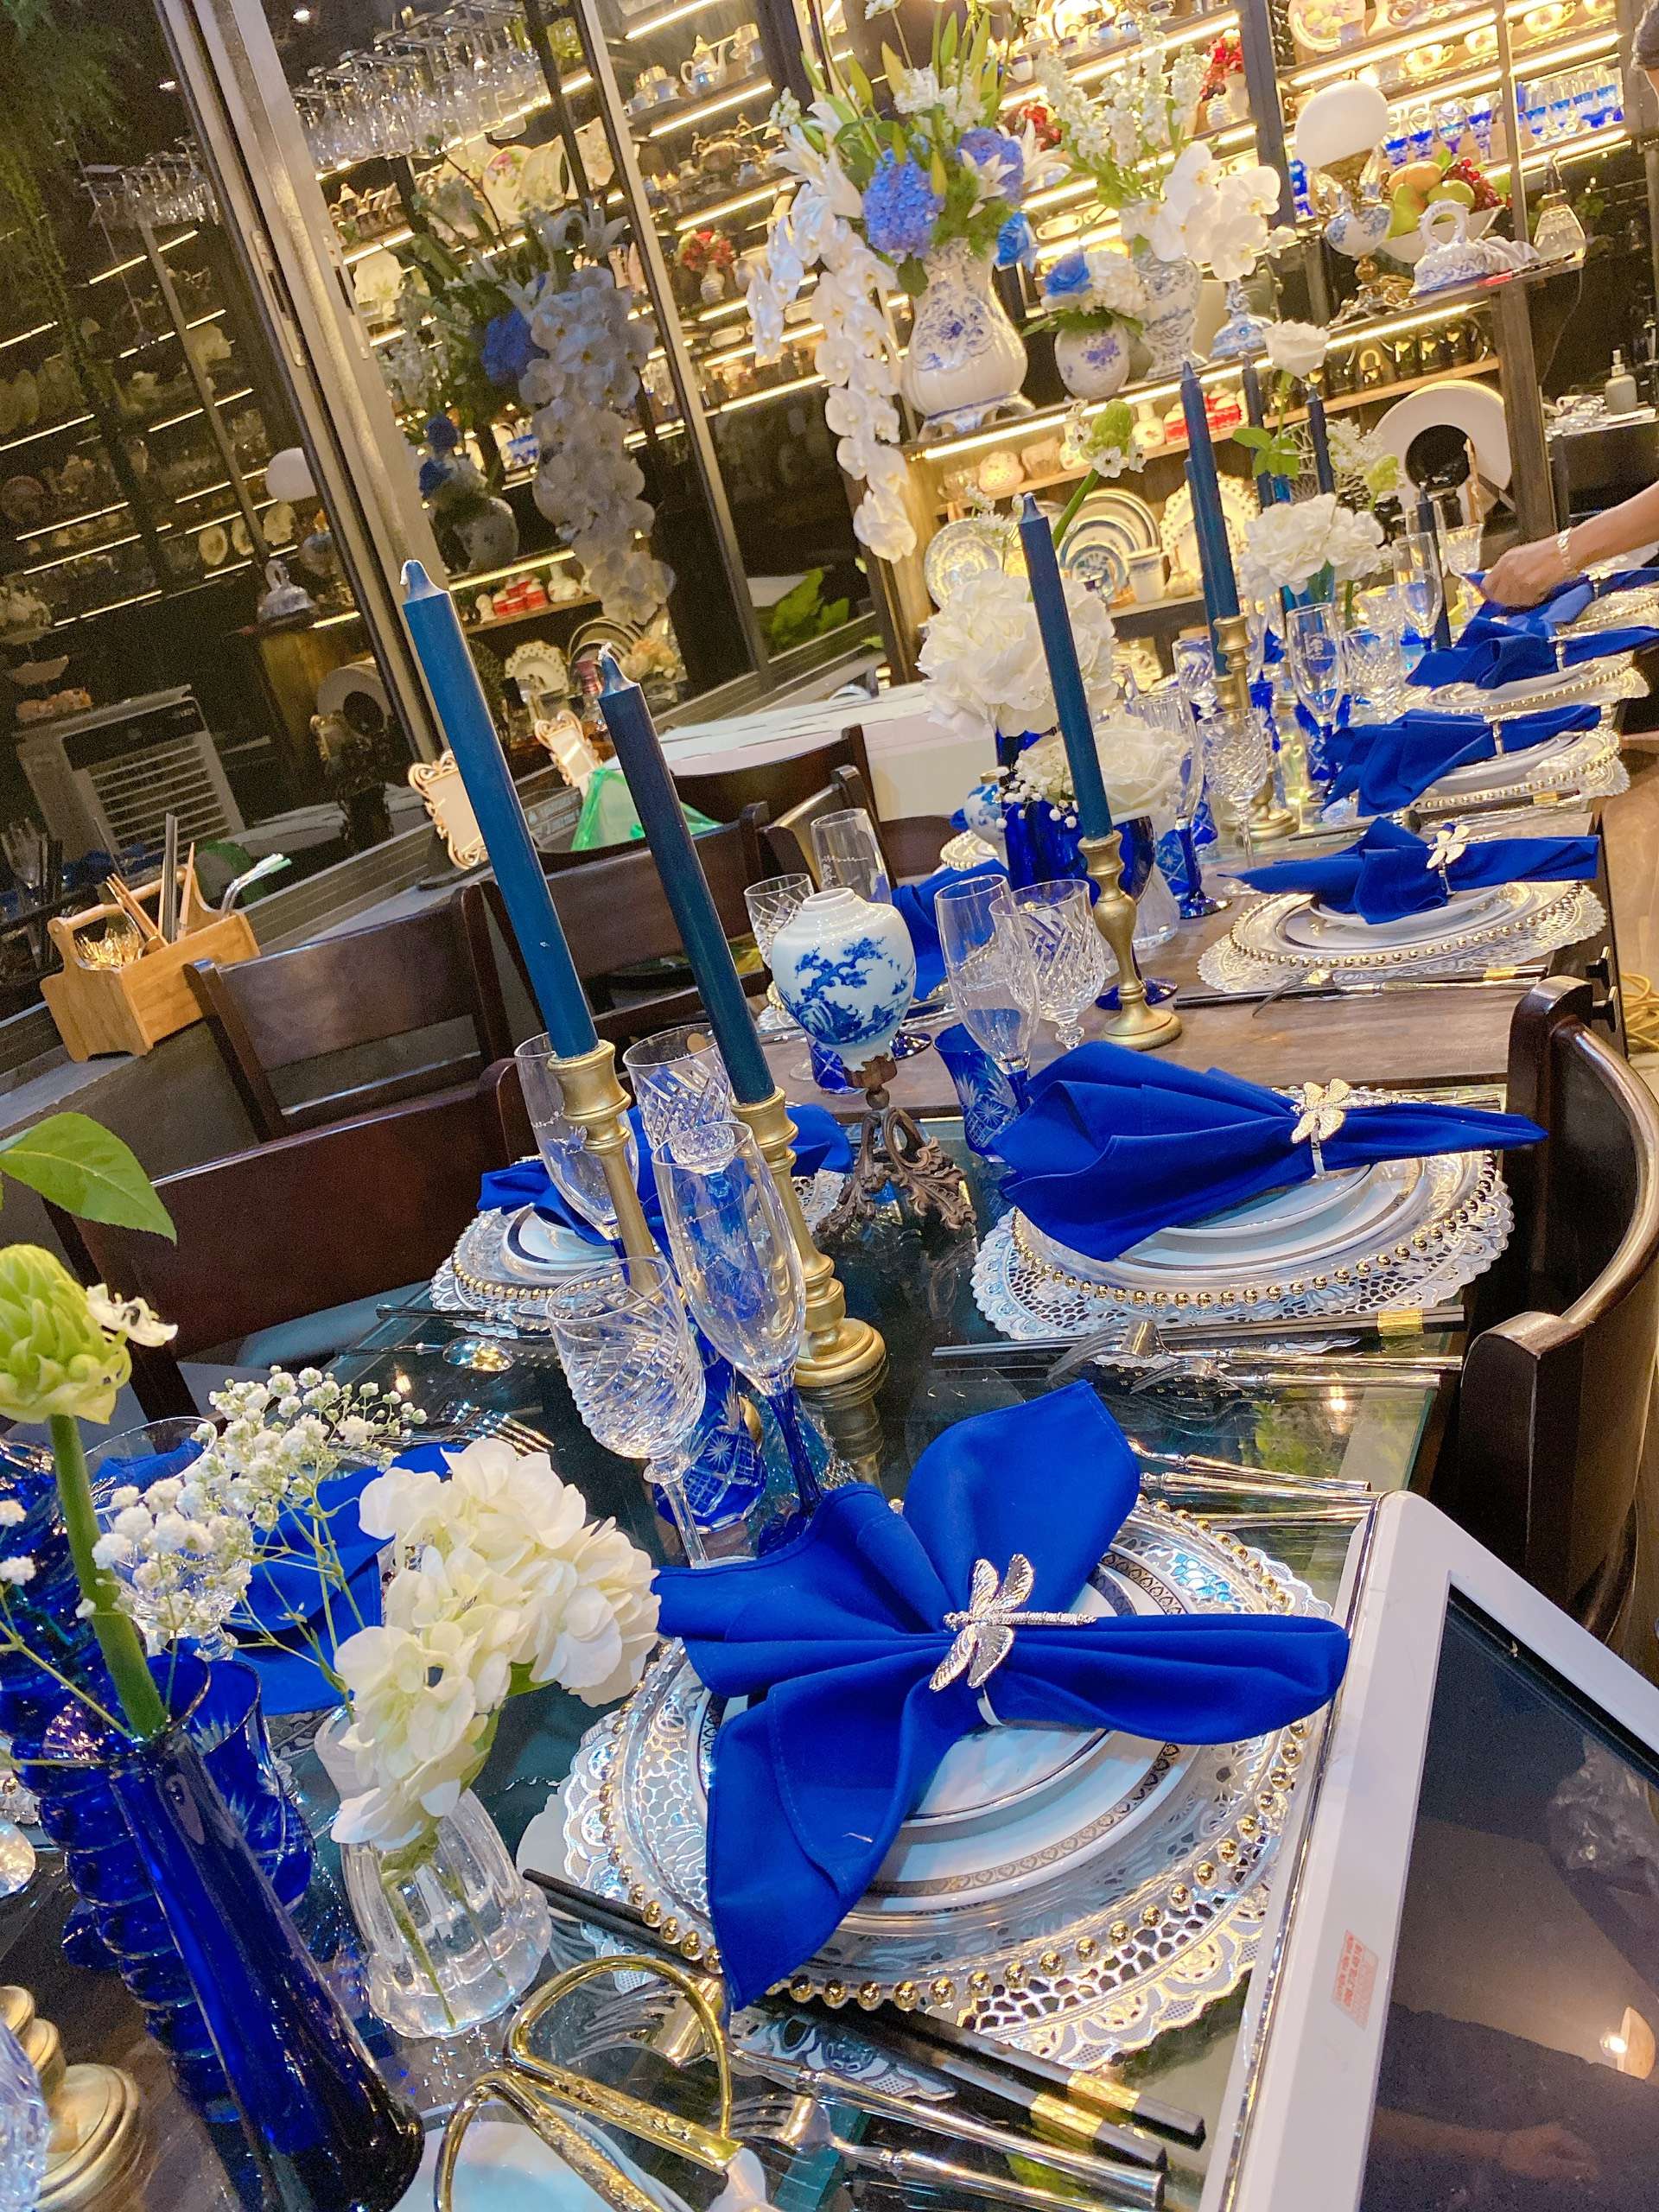 Bữa tiệc royal blue với khăn xếp xanh cobalt, đồ gốm sứ men xanh tạo nên vẻ sang trọng, quý phái